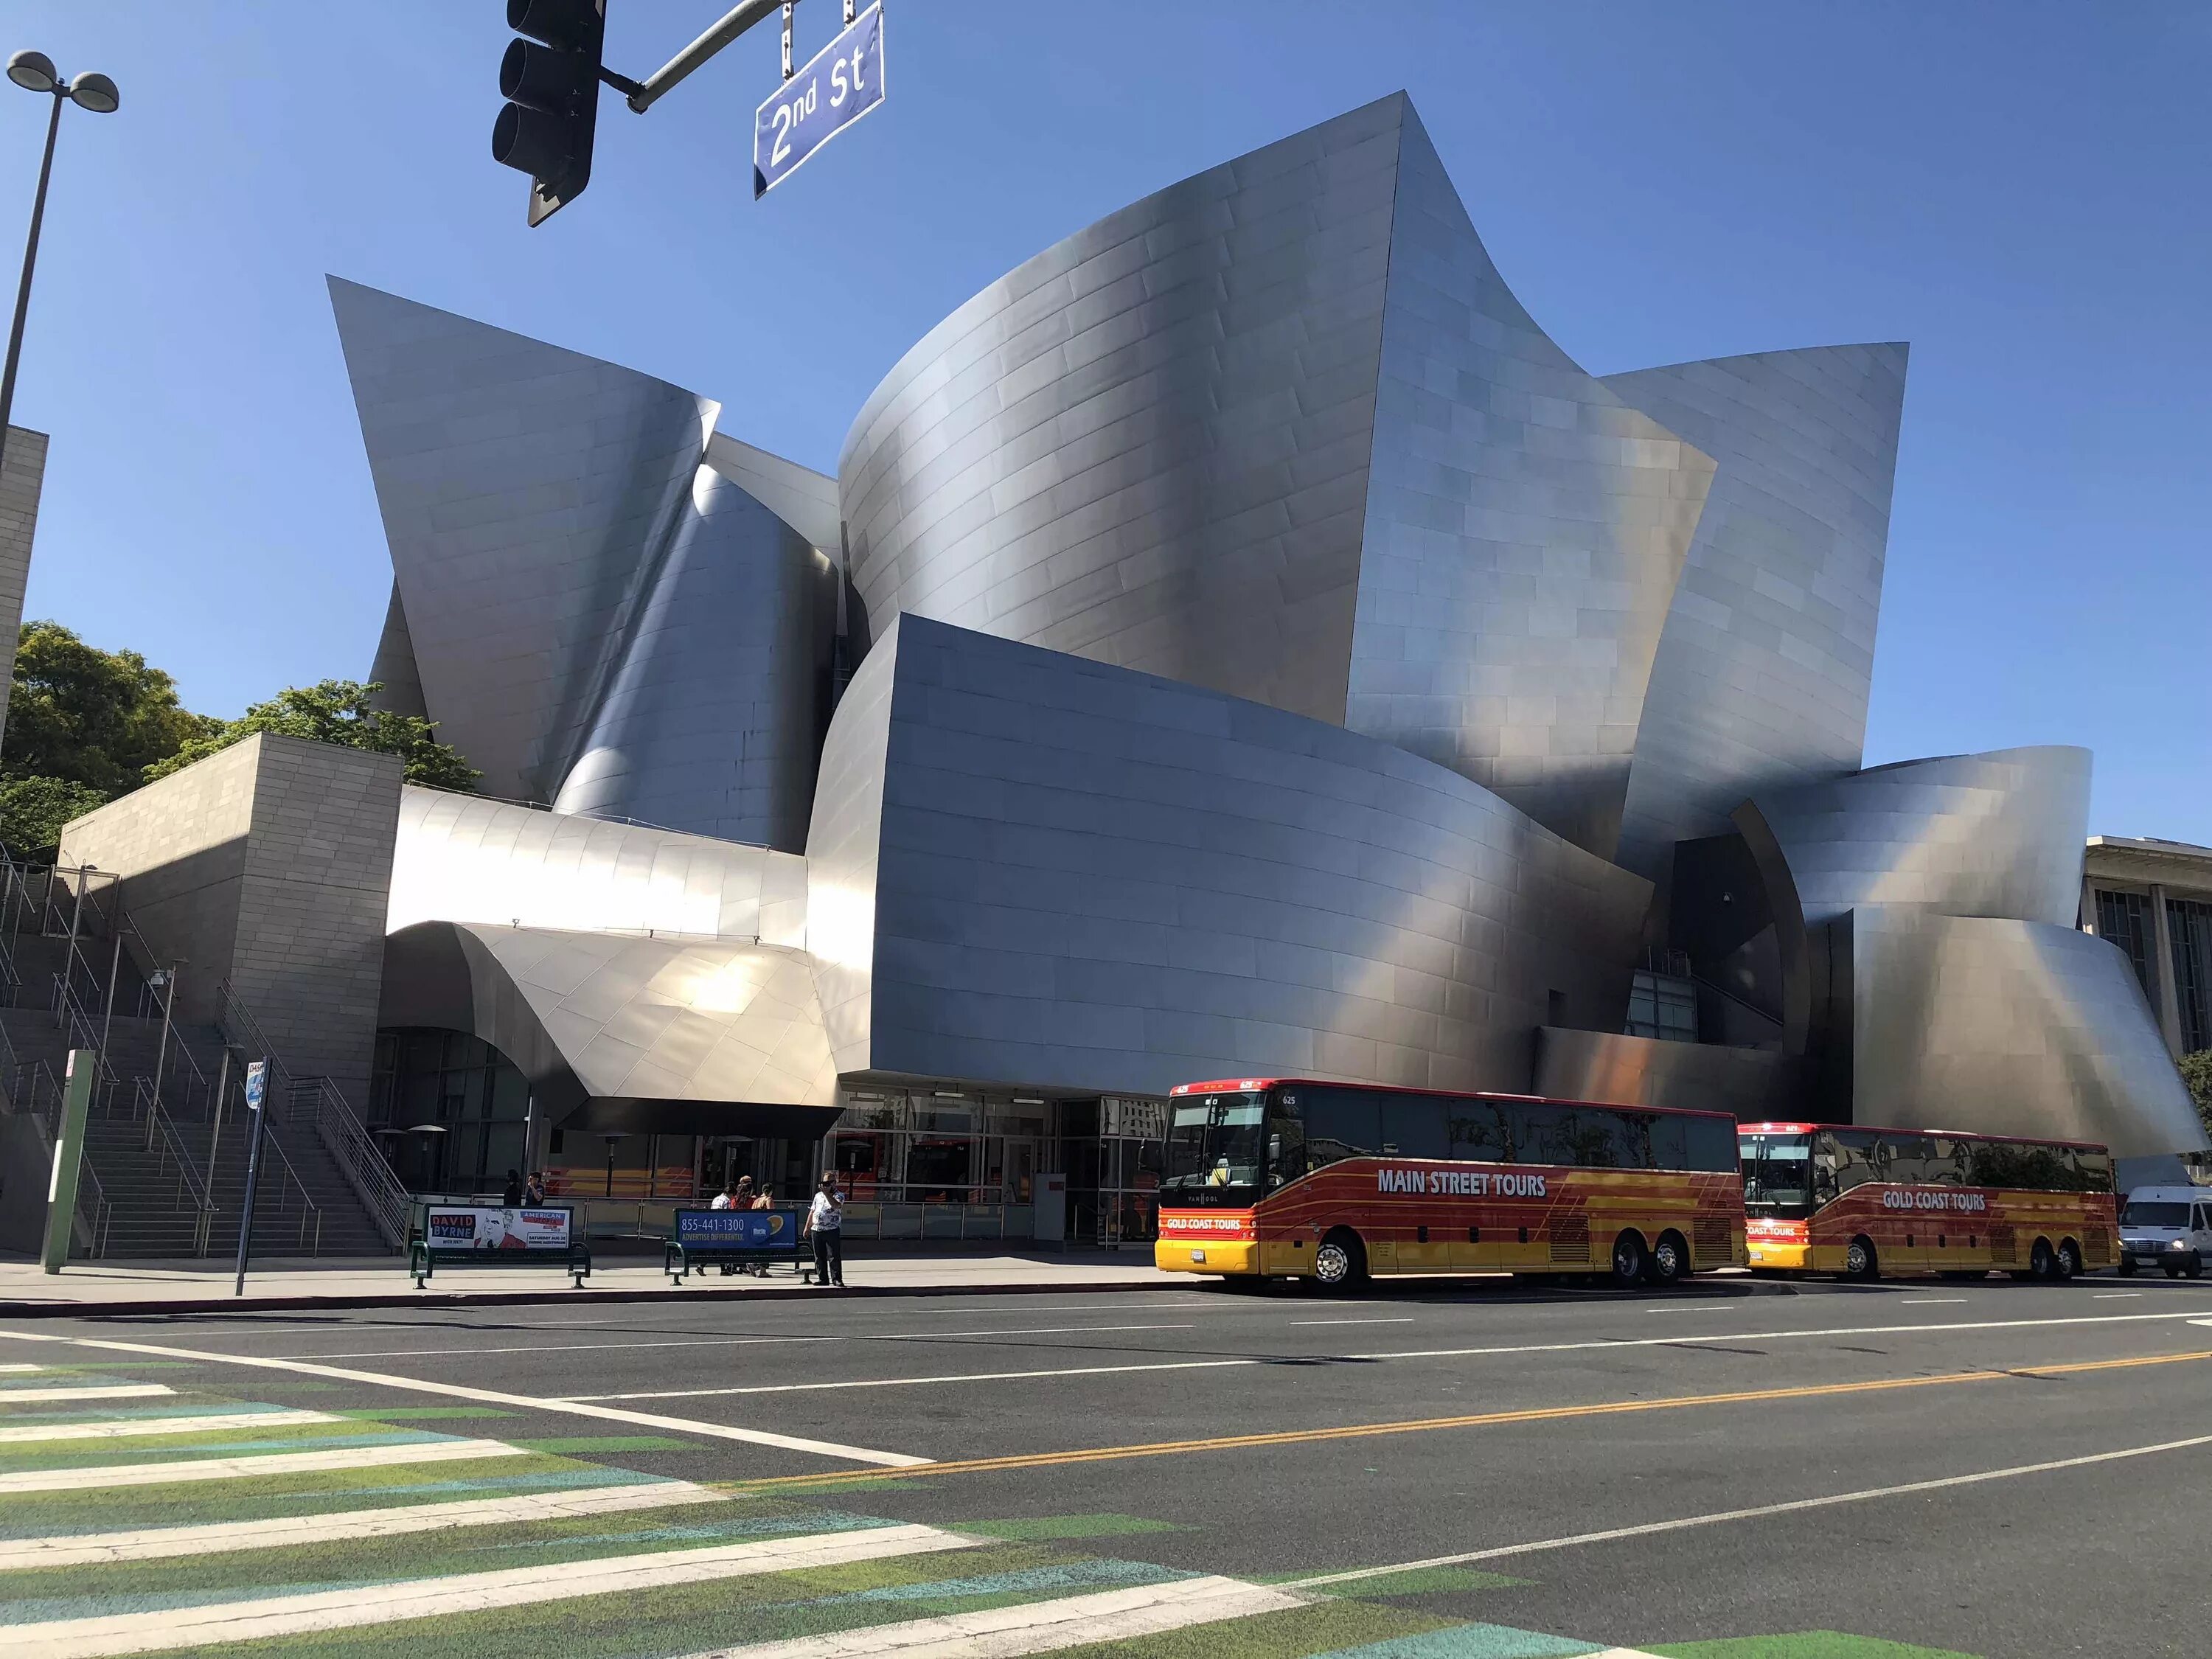 Концертный зал диснея залы. Концертный зал «Дисней» в Лос-Анджелес. Концертный зал Уолта Диснея в Лос-Анджелесе. Фрэнк Гери концертный зал Уолта Диснея. Концертный зал Уолта Диснея в Лос-Анджелесе архитектура.